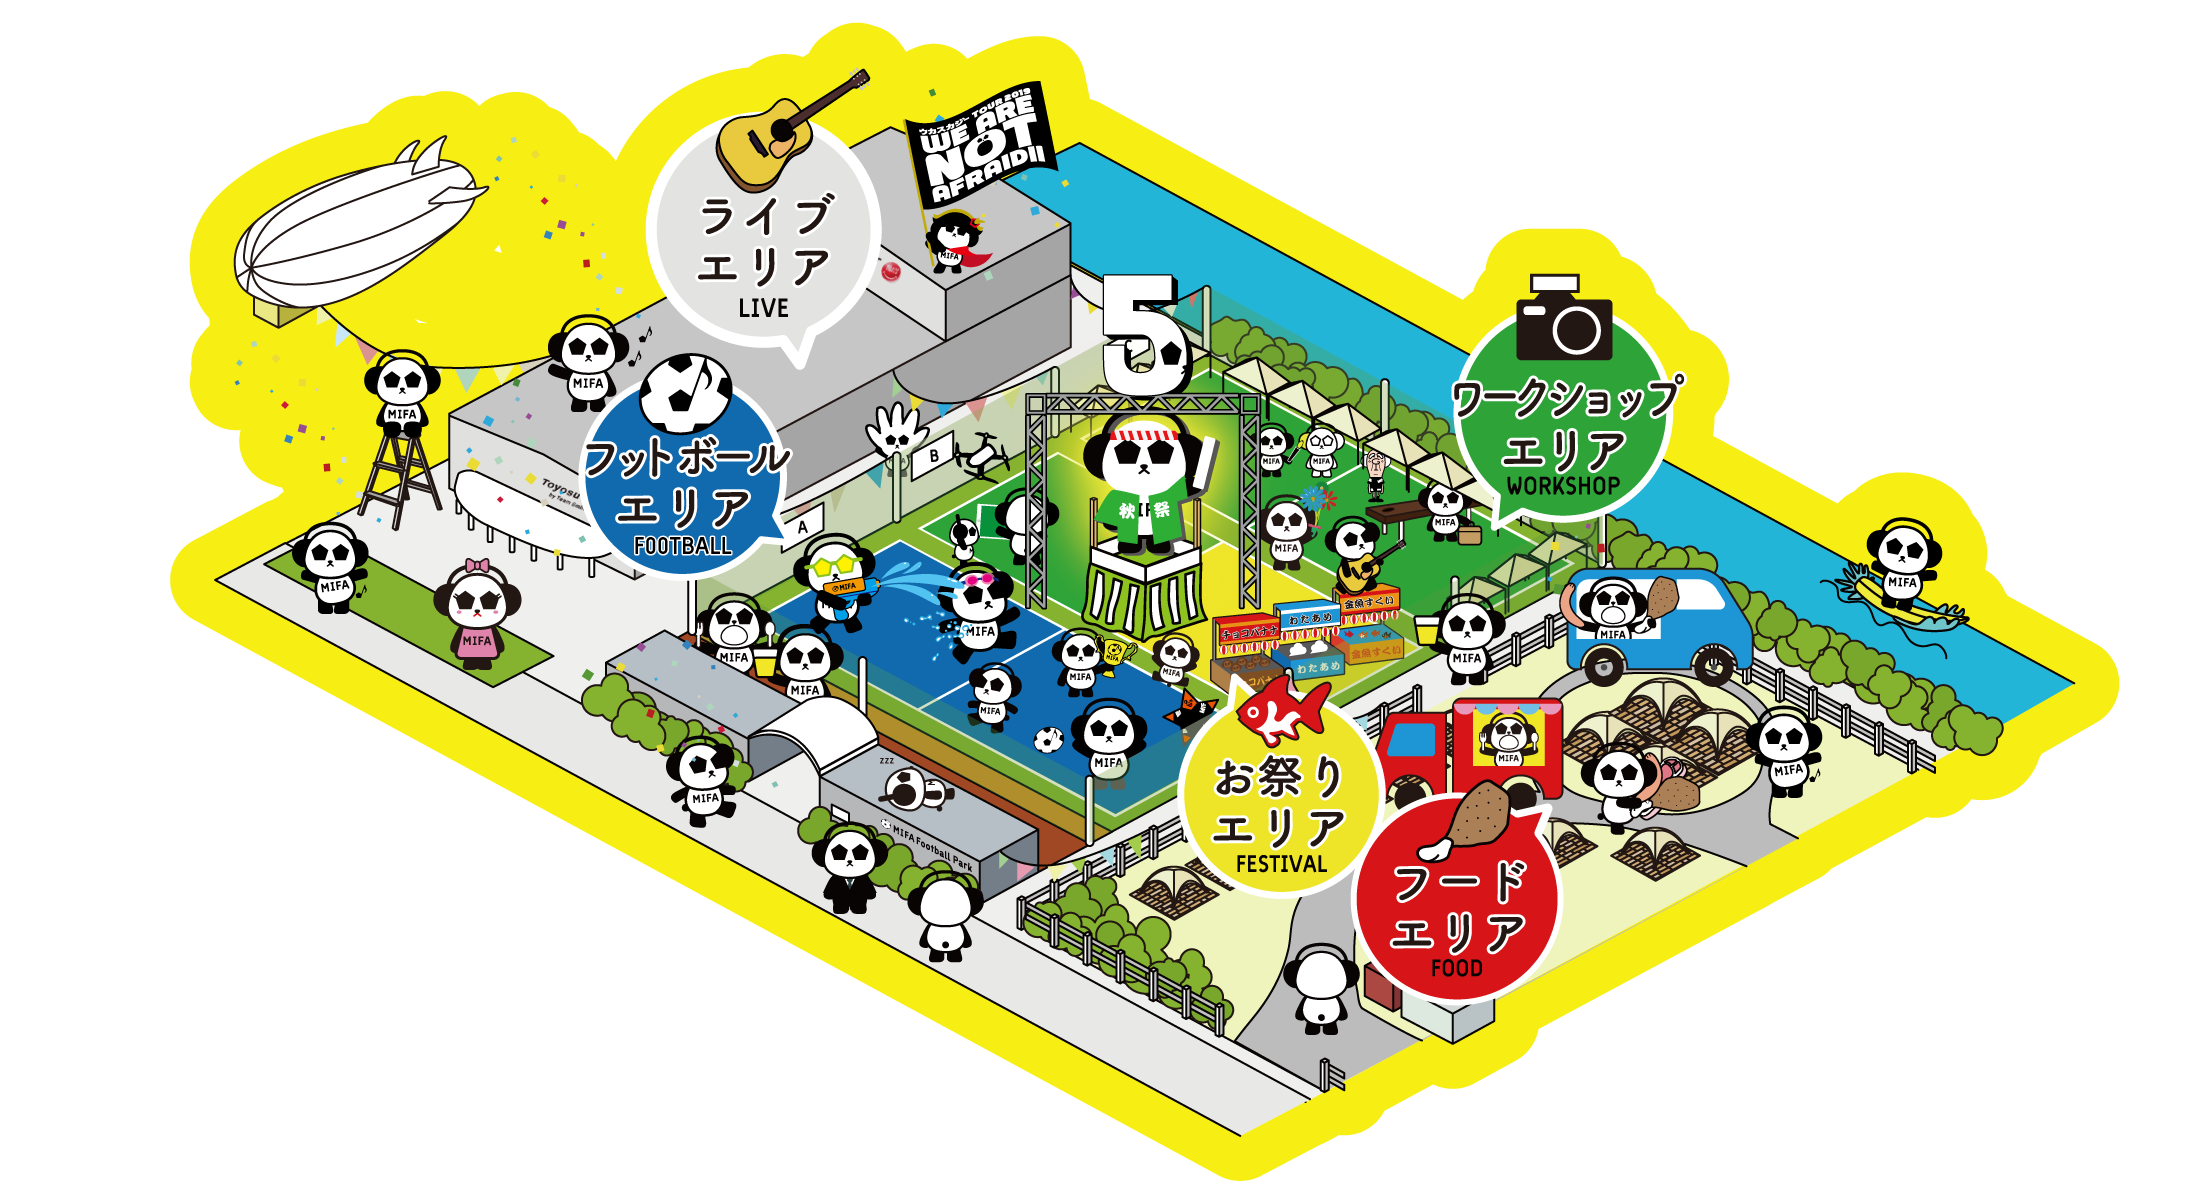 MIFA Football Park 5th anniversary party MIFA秋祭り 場内MAP